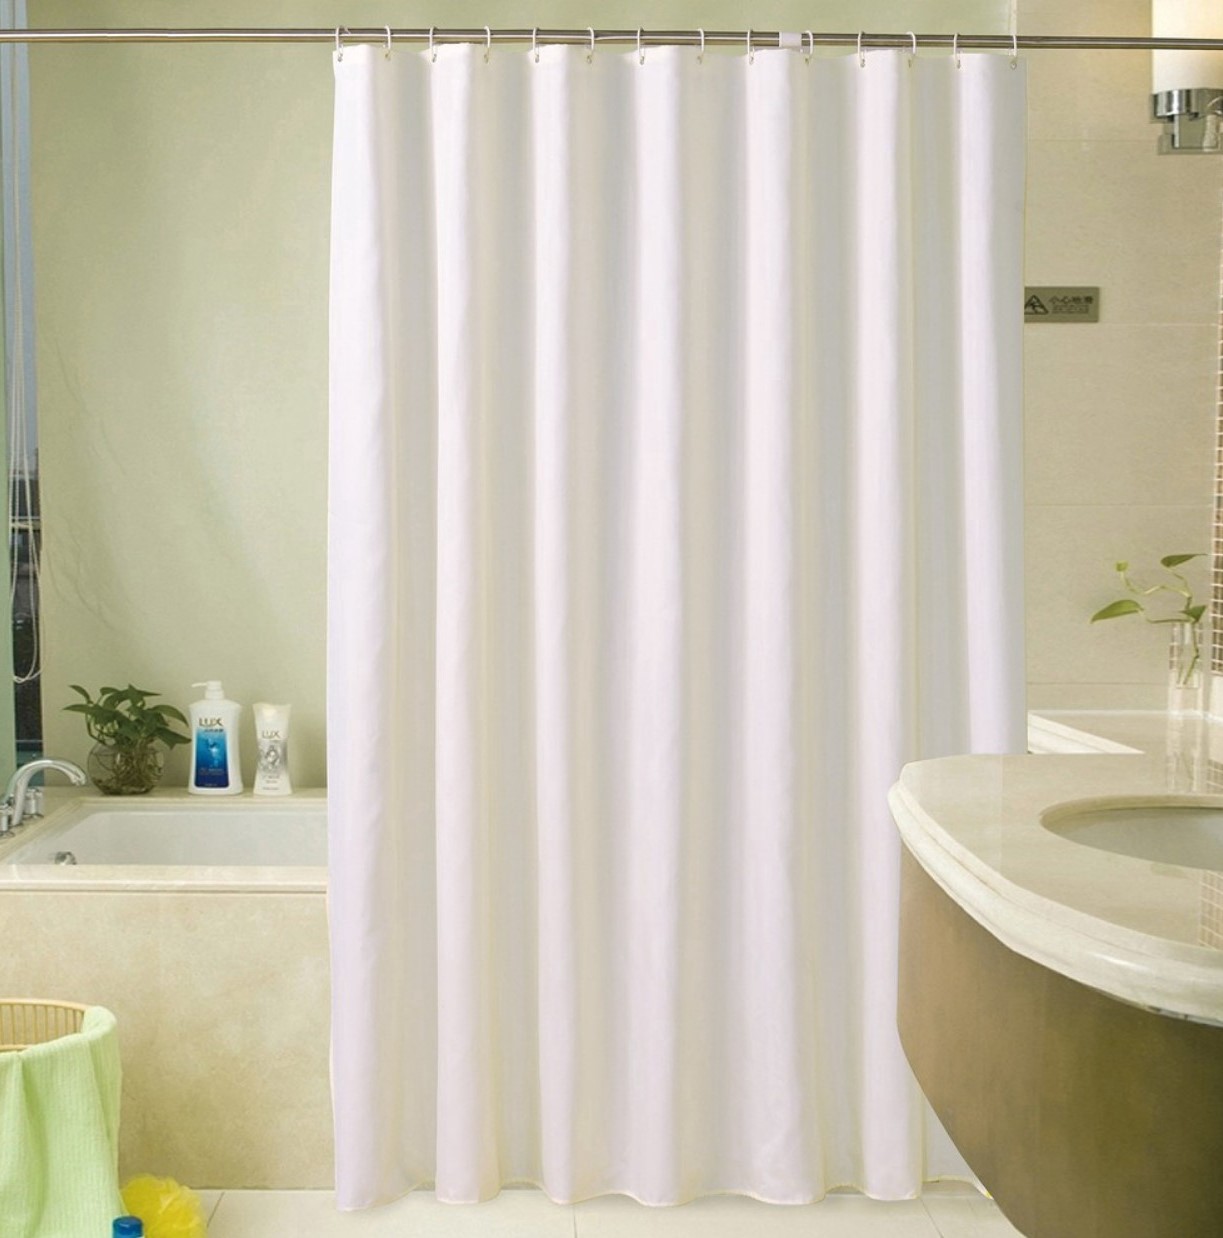 Rèm phòng tắm không thấm nước: Sản phẩm rèm phòng tắm không thấm nước là một trong những giải pháp tuyệt vời cho các gia đình. Hình ảnh sản phẩm sẽ giúp bạn cảm nhận được tính năng không thấm nước của sản phẩm và đưa ra quyết định đúng đắn cho thiết kế phòng tắm của bạn.